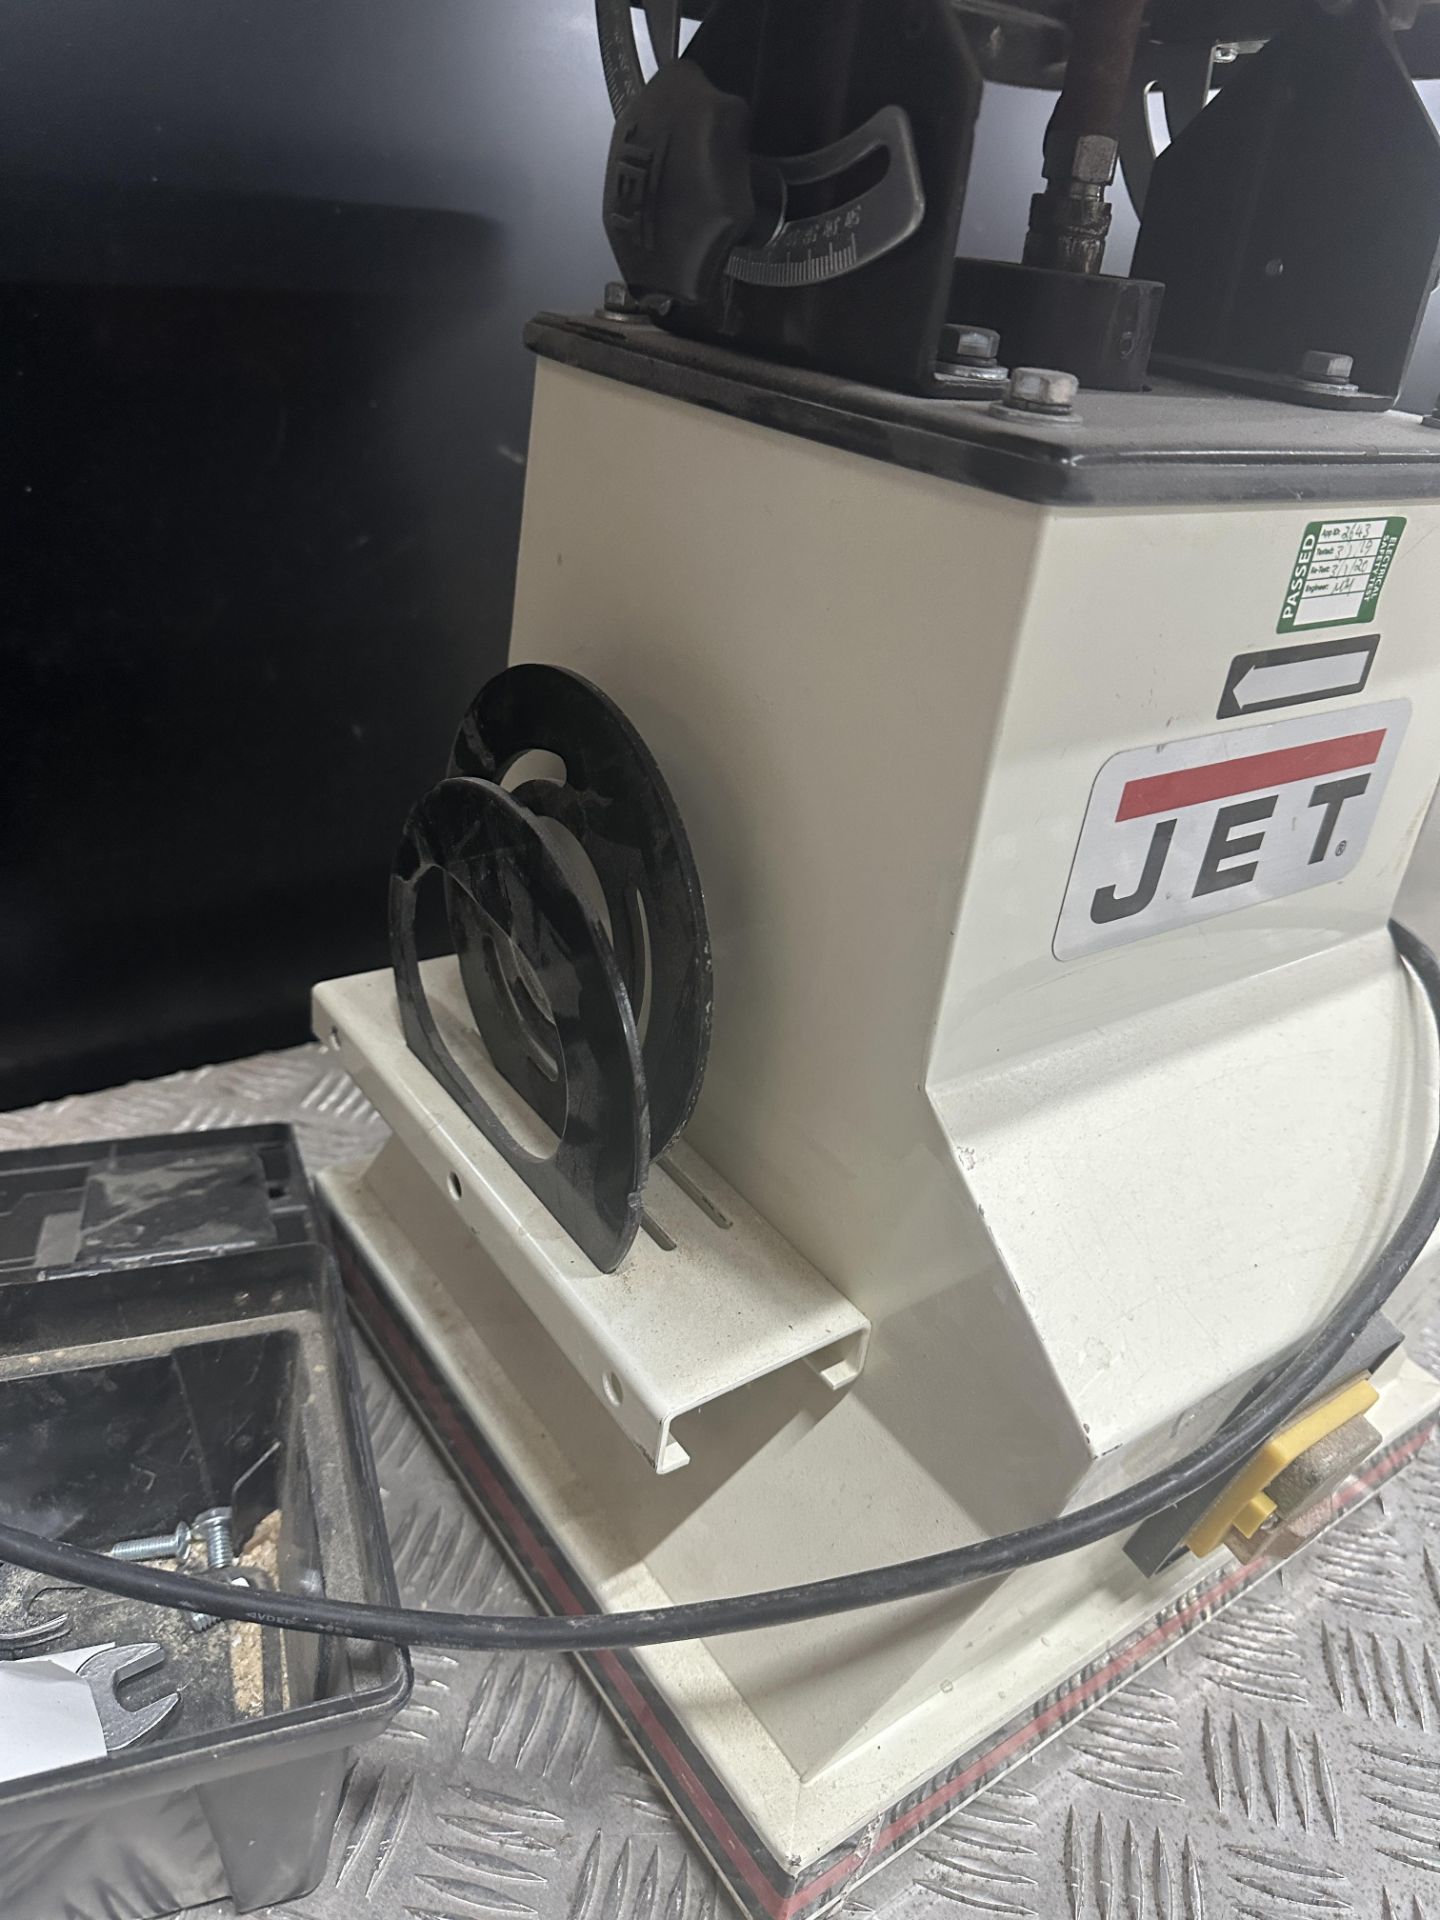 Jet JB0S 5 Oscillating spindle sander - Bild 5 aus 5